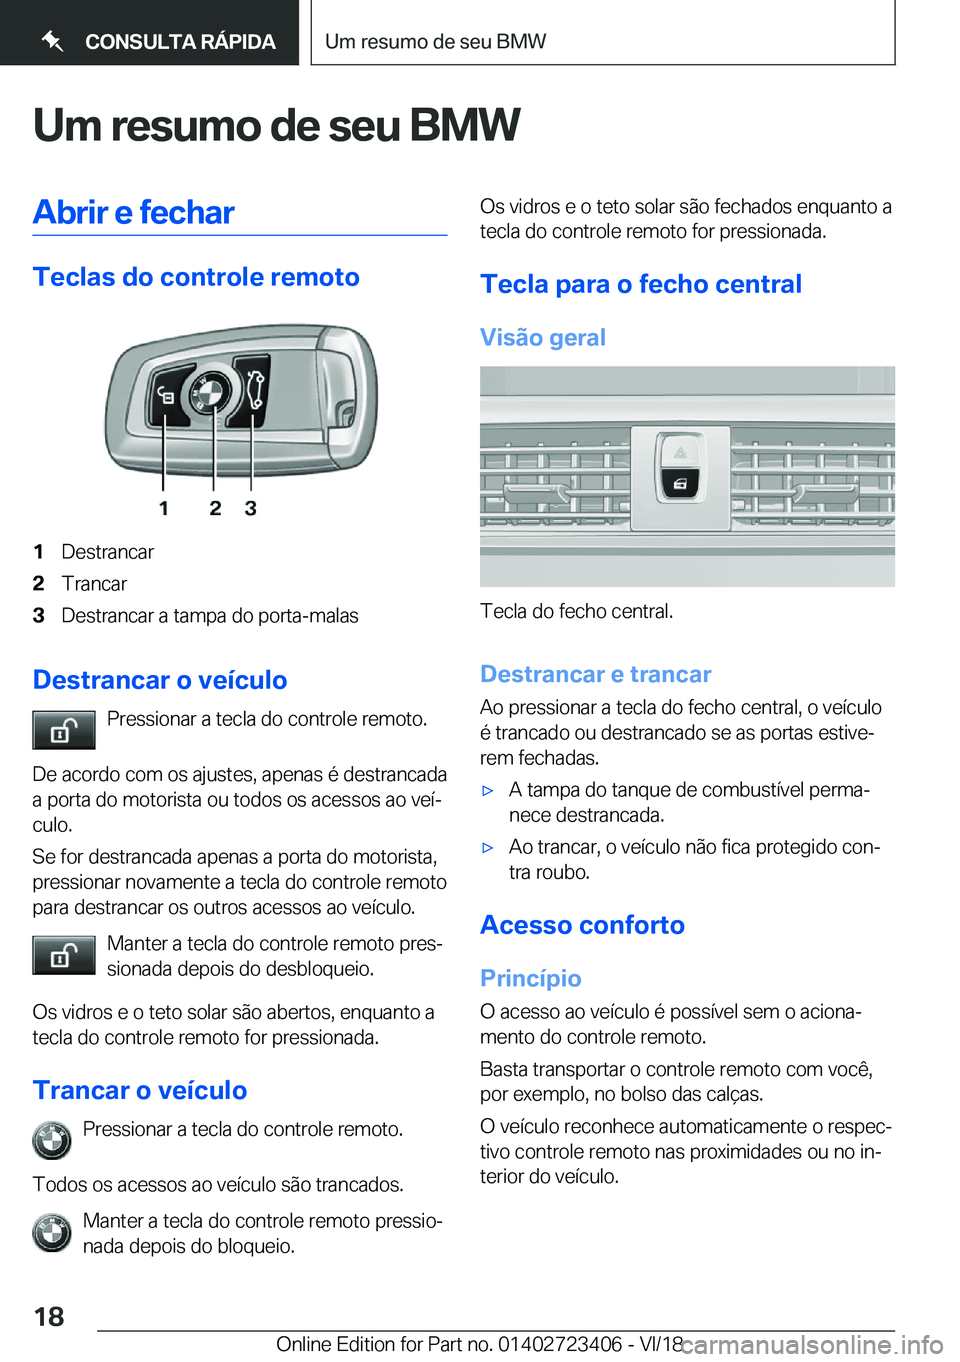 BMW 2 SERIES COUPE 2019  Manual do condutor (in Portuguese) �U�m��r�e�s�u�m�o��d�e��s�e�u��B�M�W�A�b�r�i�r��e��f�e�c�h�a�r
�T�e�c�l�a�s��d�o��c�o�n�t�r�o�l�e��r�e�m�o�t�o
�1�D�e�s�t�r�a�n�c�a�r�2�T�r�a�n�c�a�r�3�D�e�s�t�r�a�n�c�a�r��a��t�a�m�p�a��d